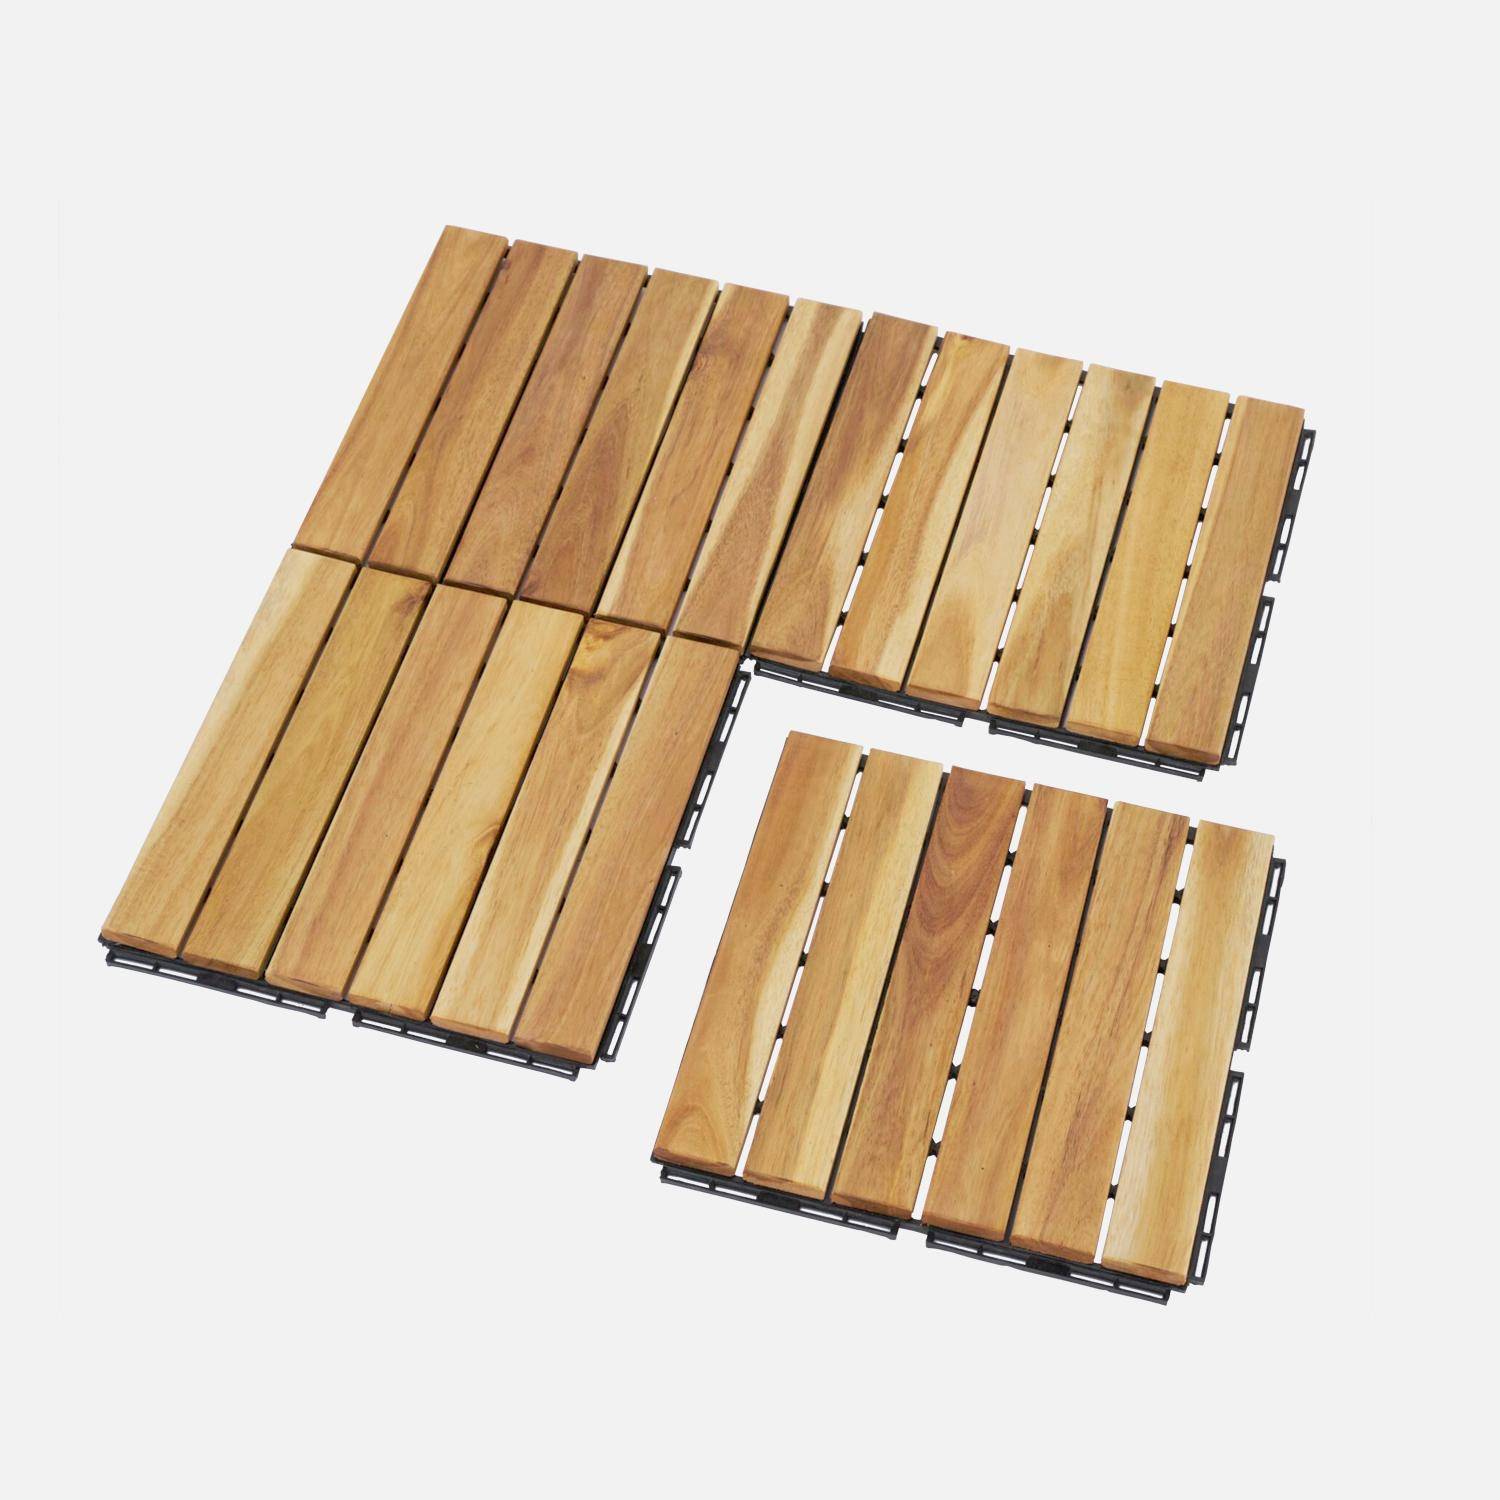 Lote de 36 ladrilhos para decks de madeira de acácia 30x30cm, padrão linear, ripado, de encaixe,sweeek,Photo3